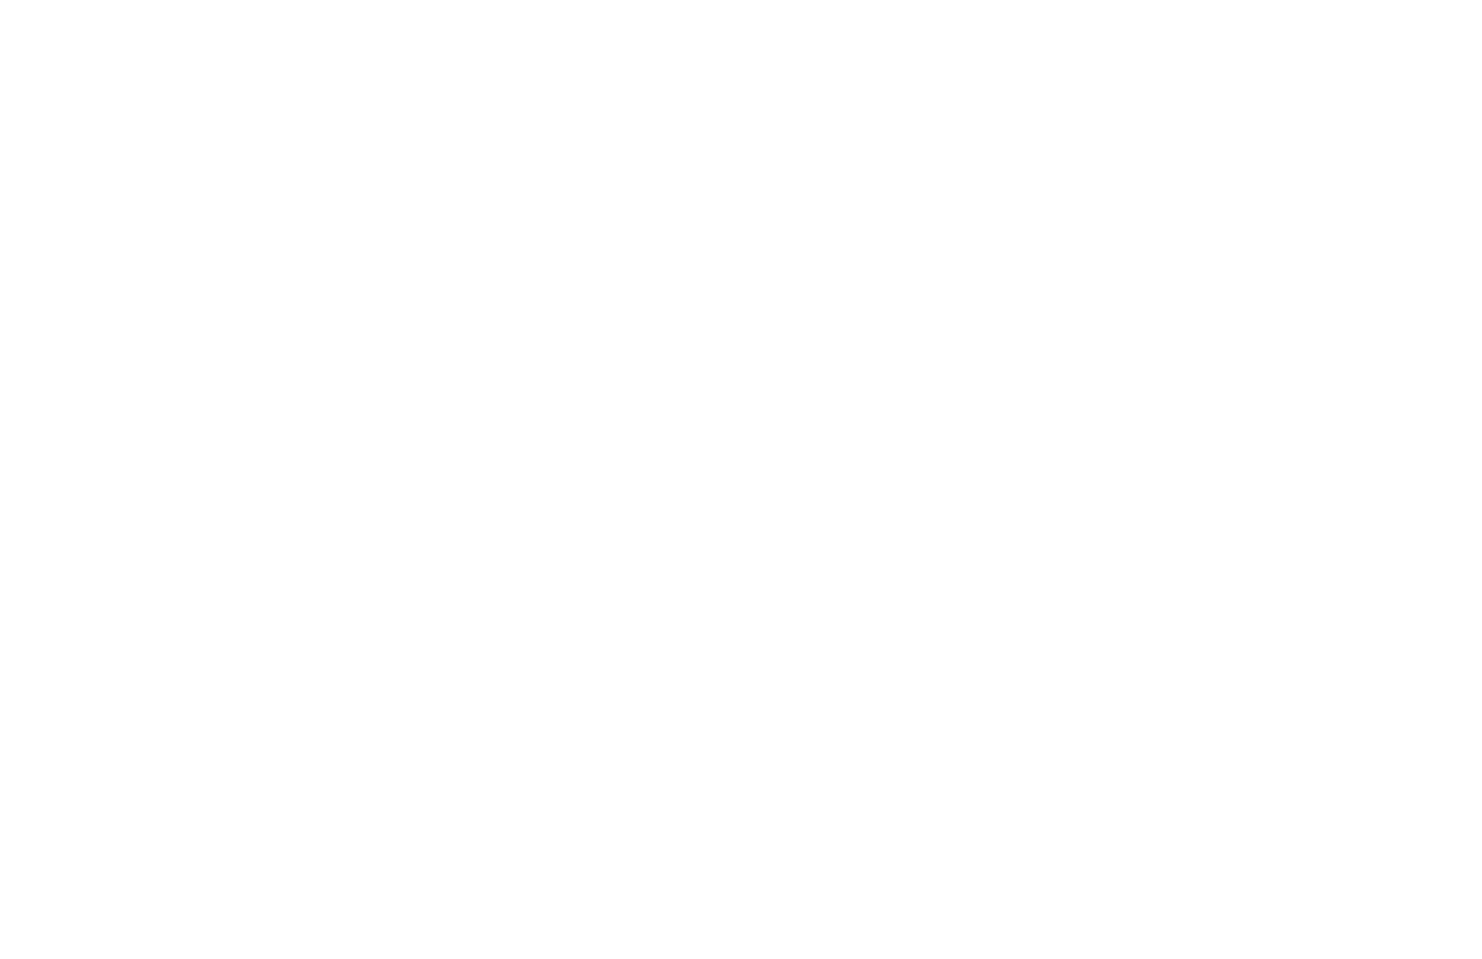 Лот №18: Картина с отпечатками рук Александра Овечкина. Холст хлопок, акриловые краски, размер 100х70 см, 2019 г. (авторы: Александр Овечкин, Никита Фоменко). Начальная цена: 25 000 руб.